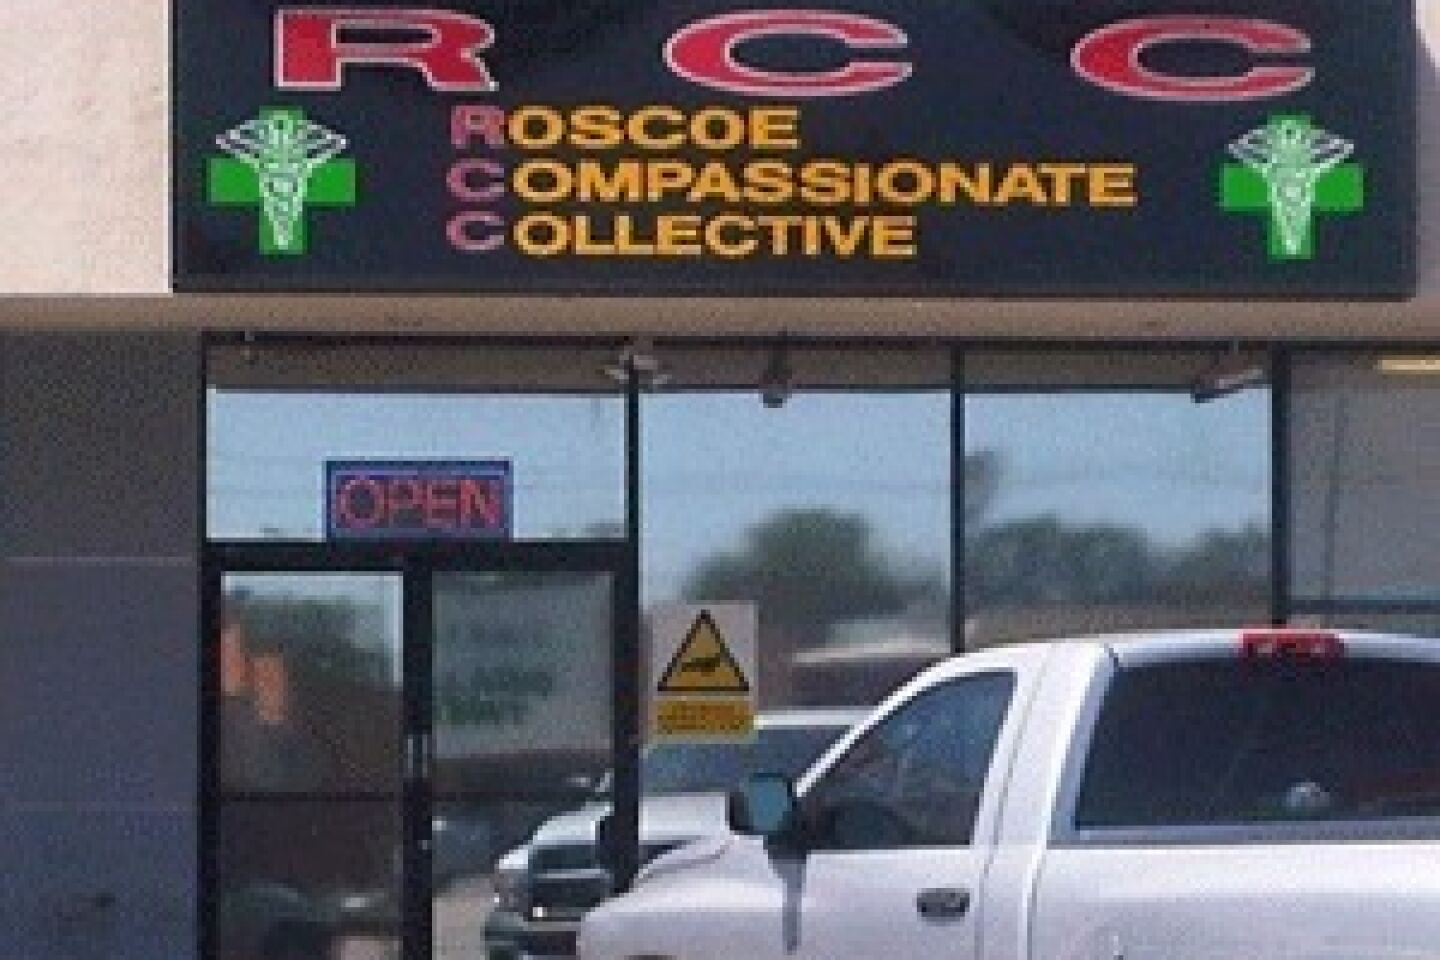 Roscoe Compassionate Collective, Canoga Park